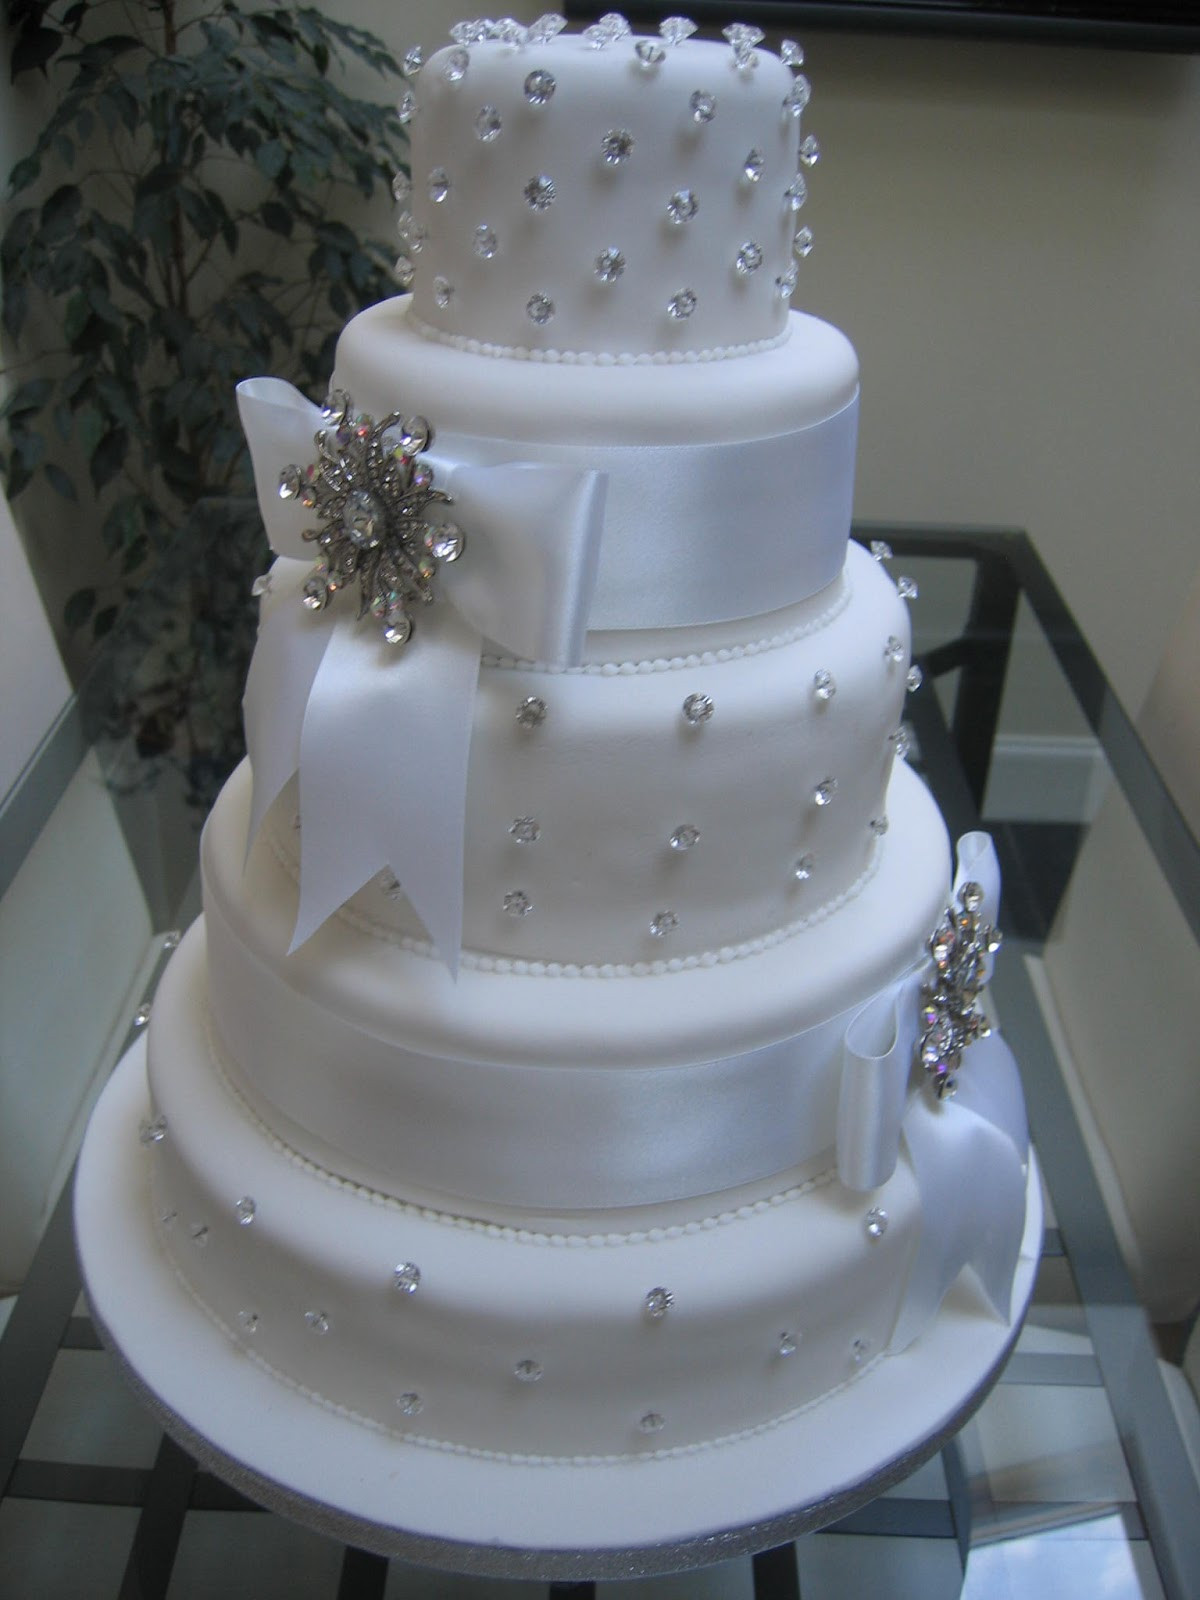 Bling Wedding Cakes
 Wedding Cake Bling Beautiful Cakes That Sparkle & Shine